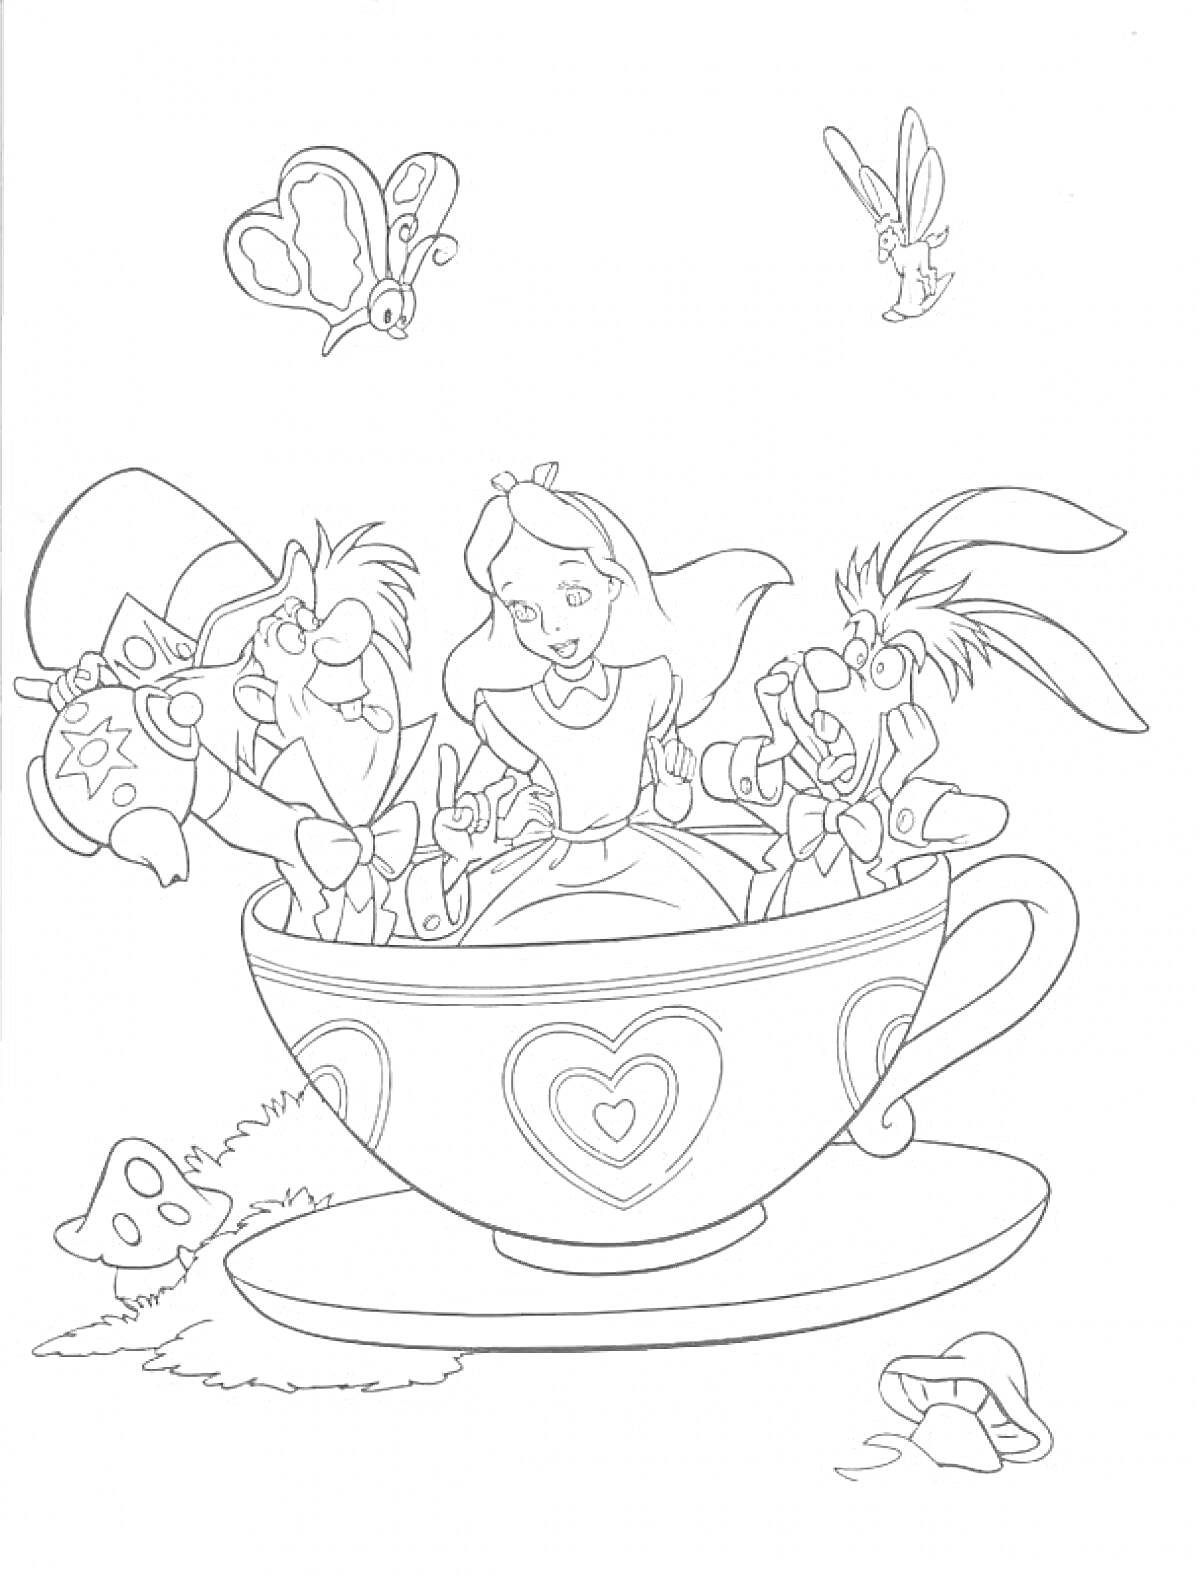 Алиса, Шляпник и Мартовский Заяц в чашке, бабочка, и кролик